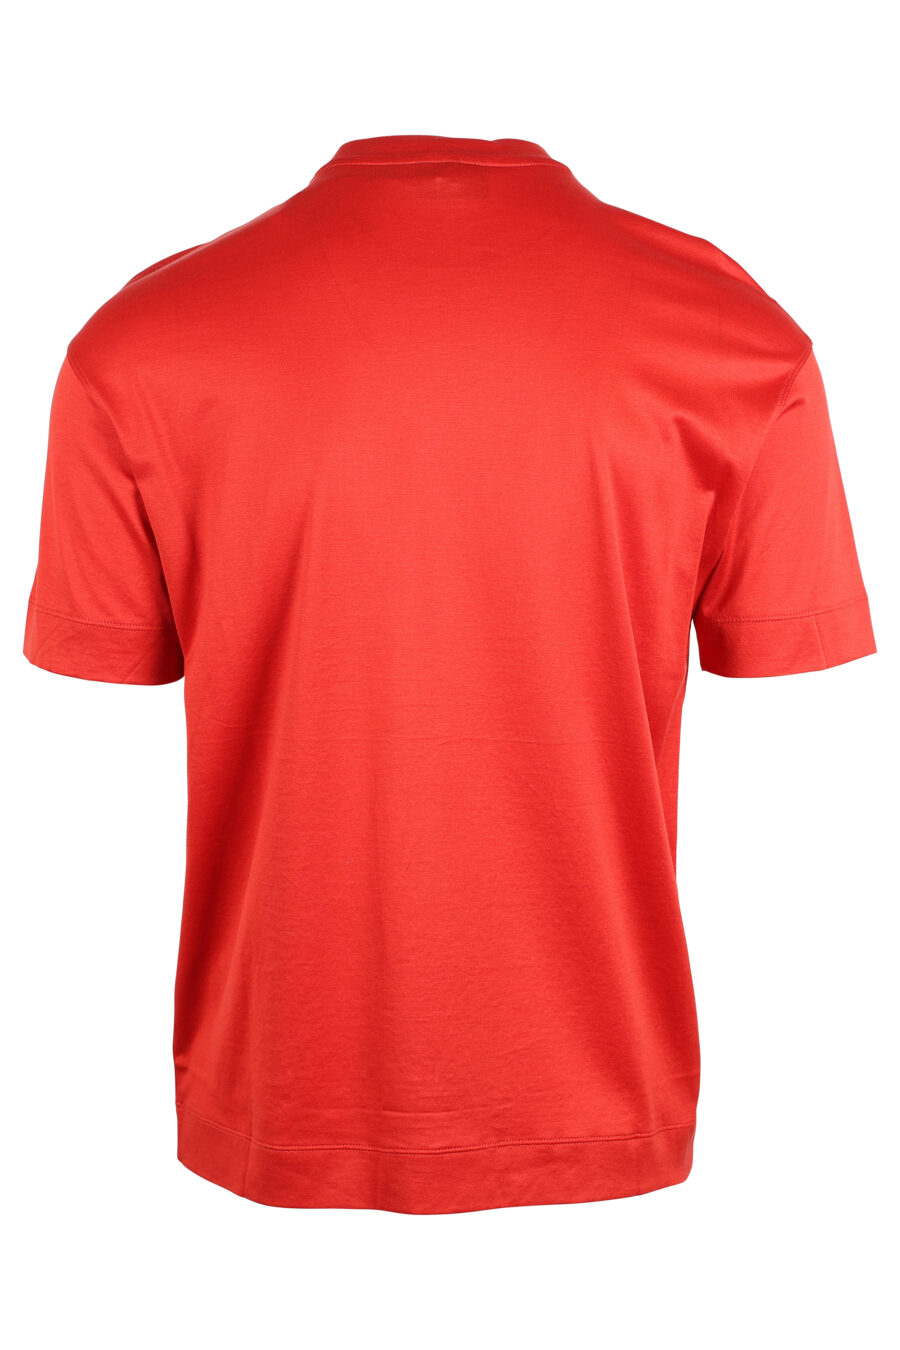 T-shirt vermelha com maxilogo monocromático - IMG 4746